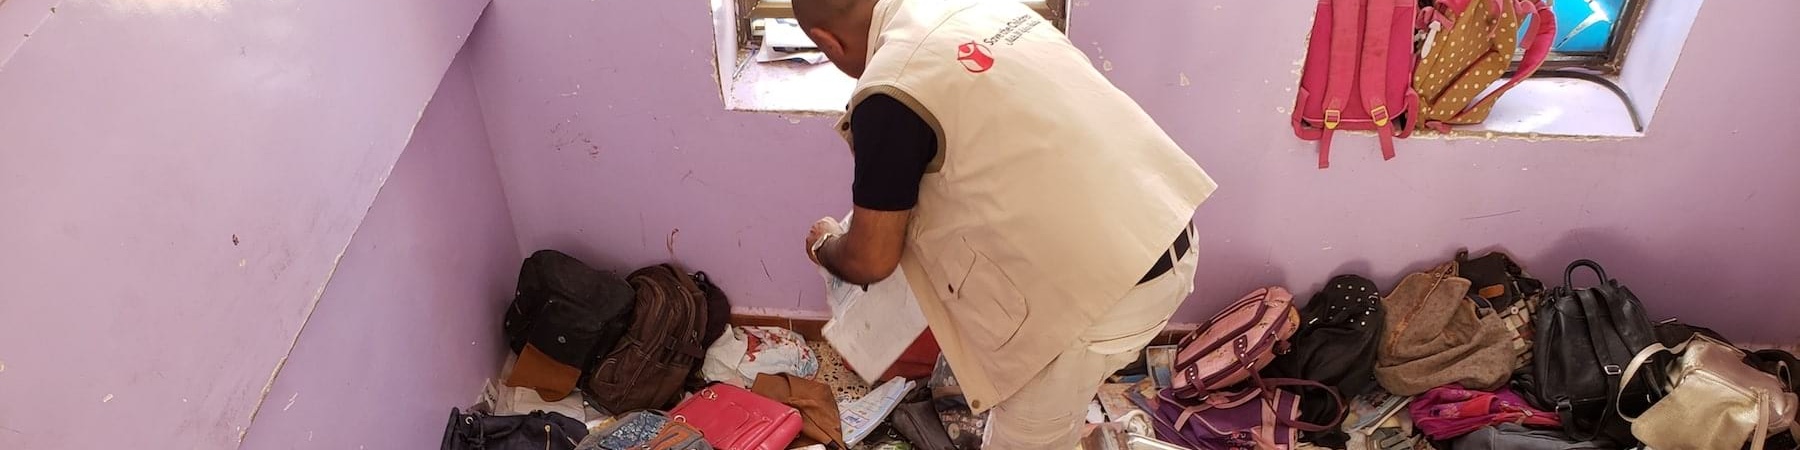 operatore-save-the-children-di-spalle-in-edificio-yemen